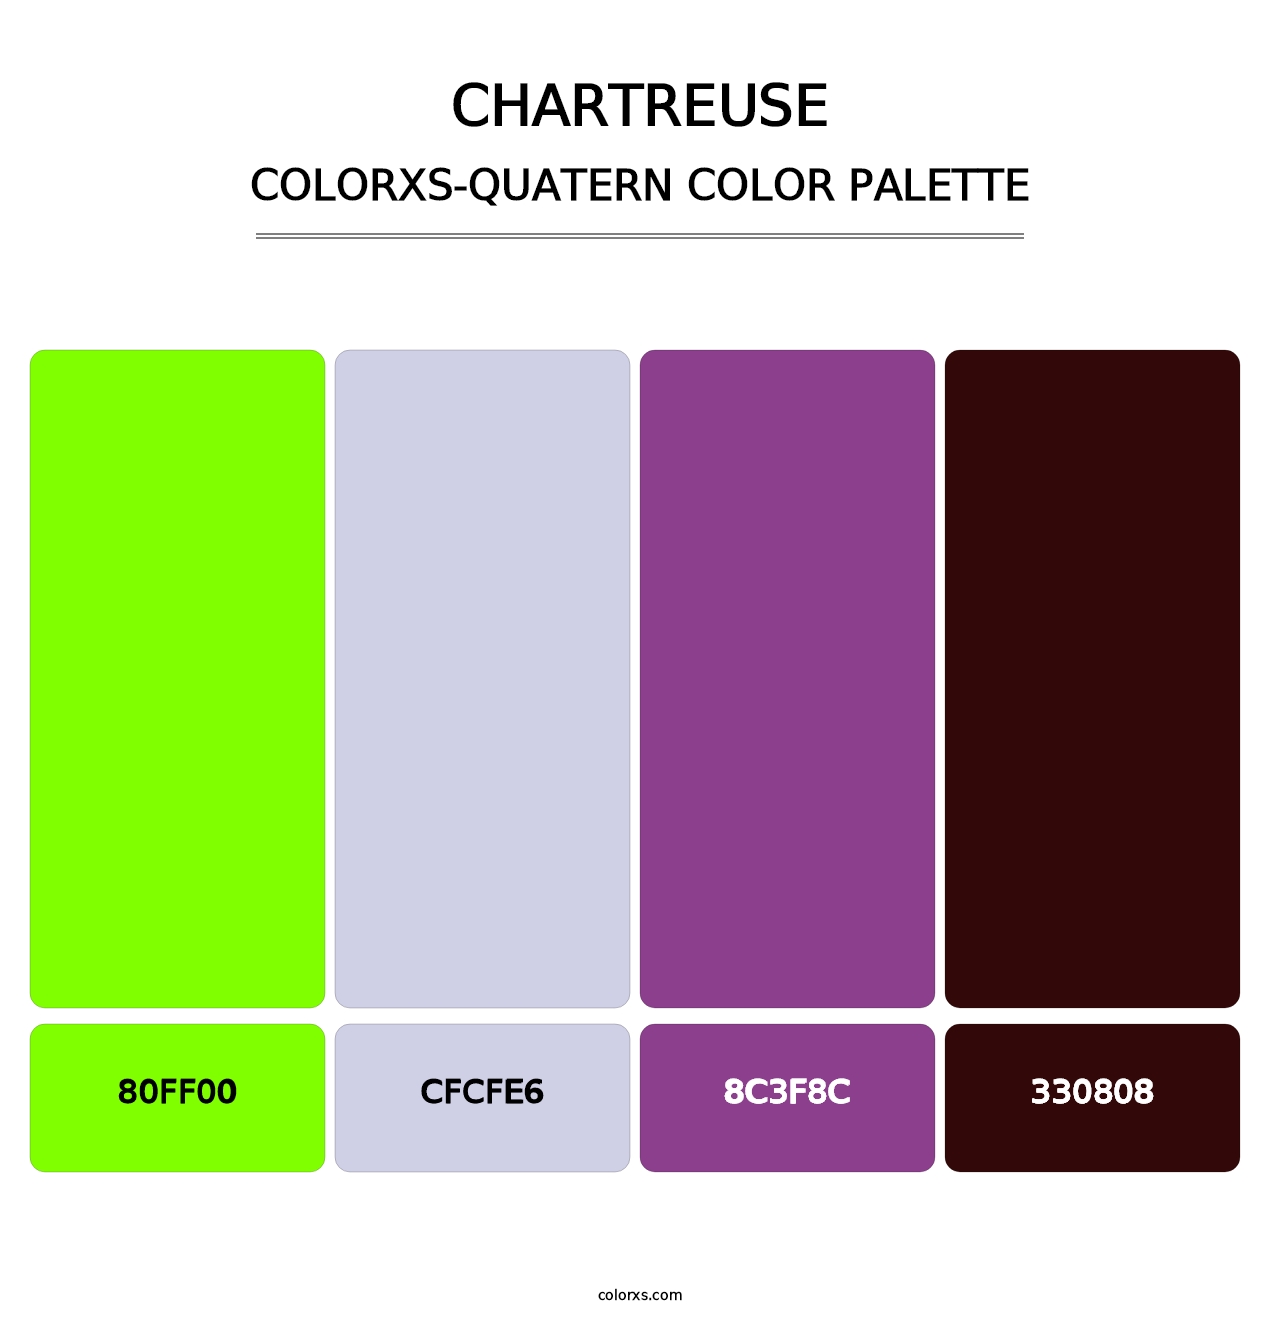 Chartreuse - Colorxs Quatern Palette